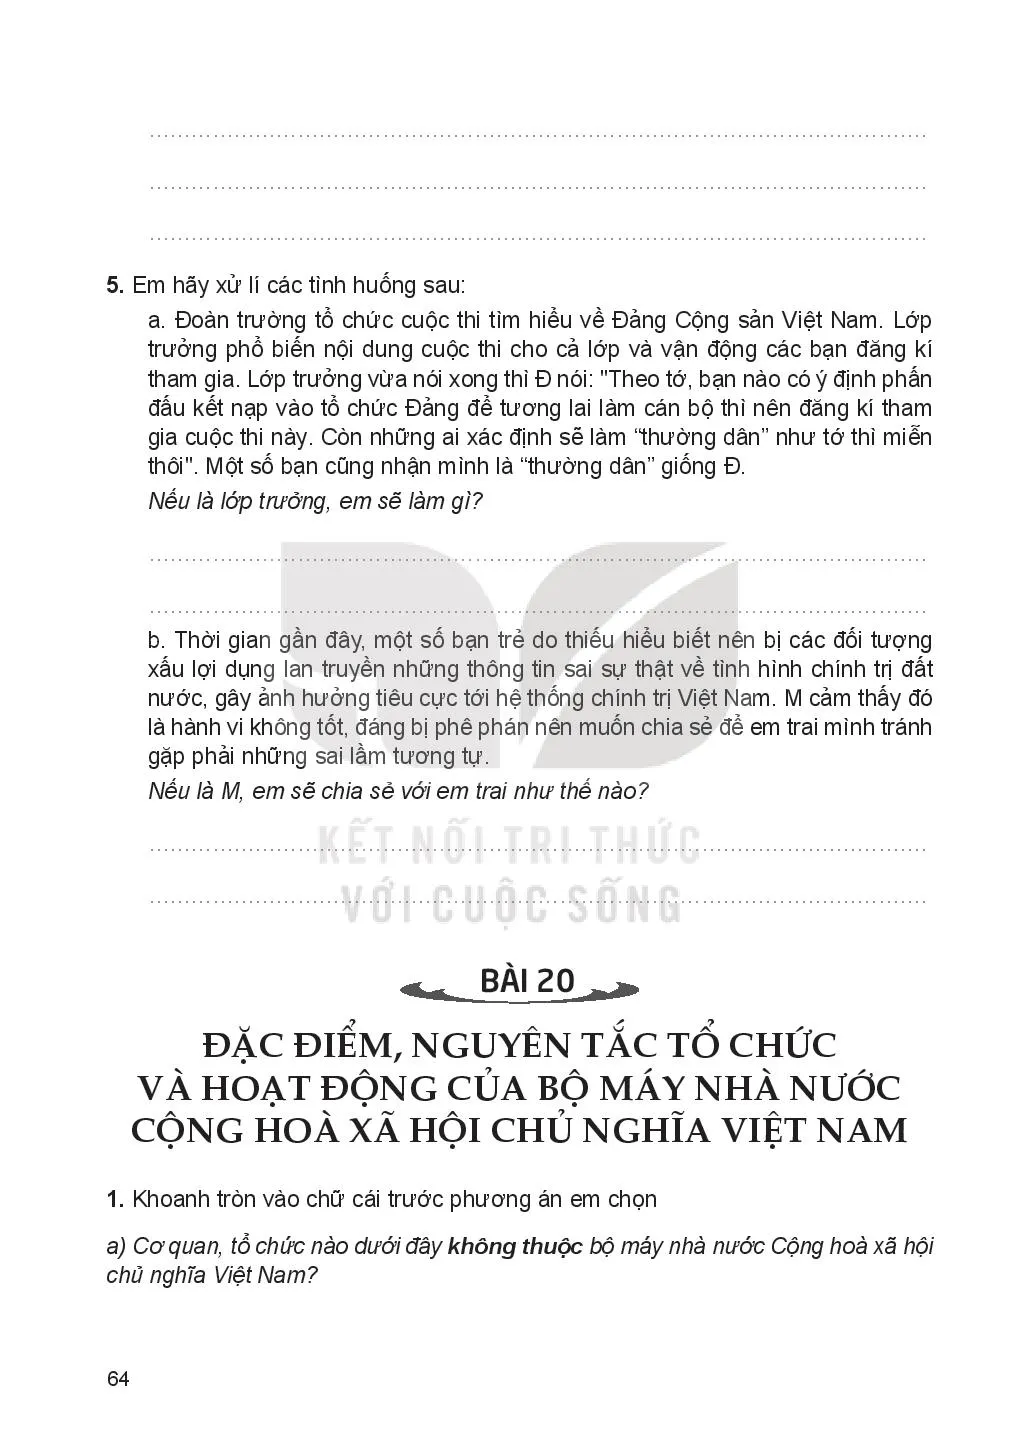 Bài 20: Đặc điểm, nguyên tắc tổ chức và hoạt động của bộ máy nhà nước Cộng hoà xã hội chủ nghĩa Việt Nam